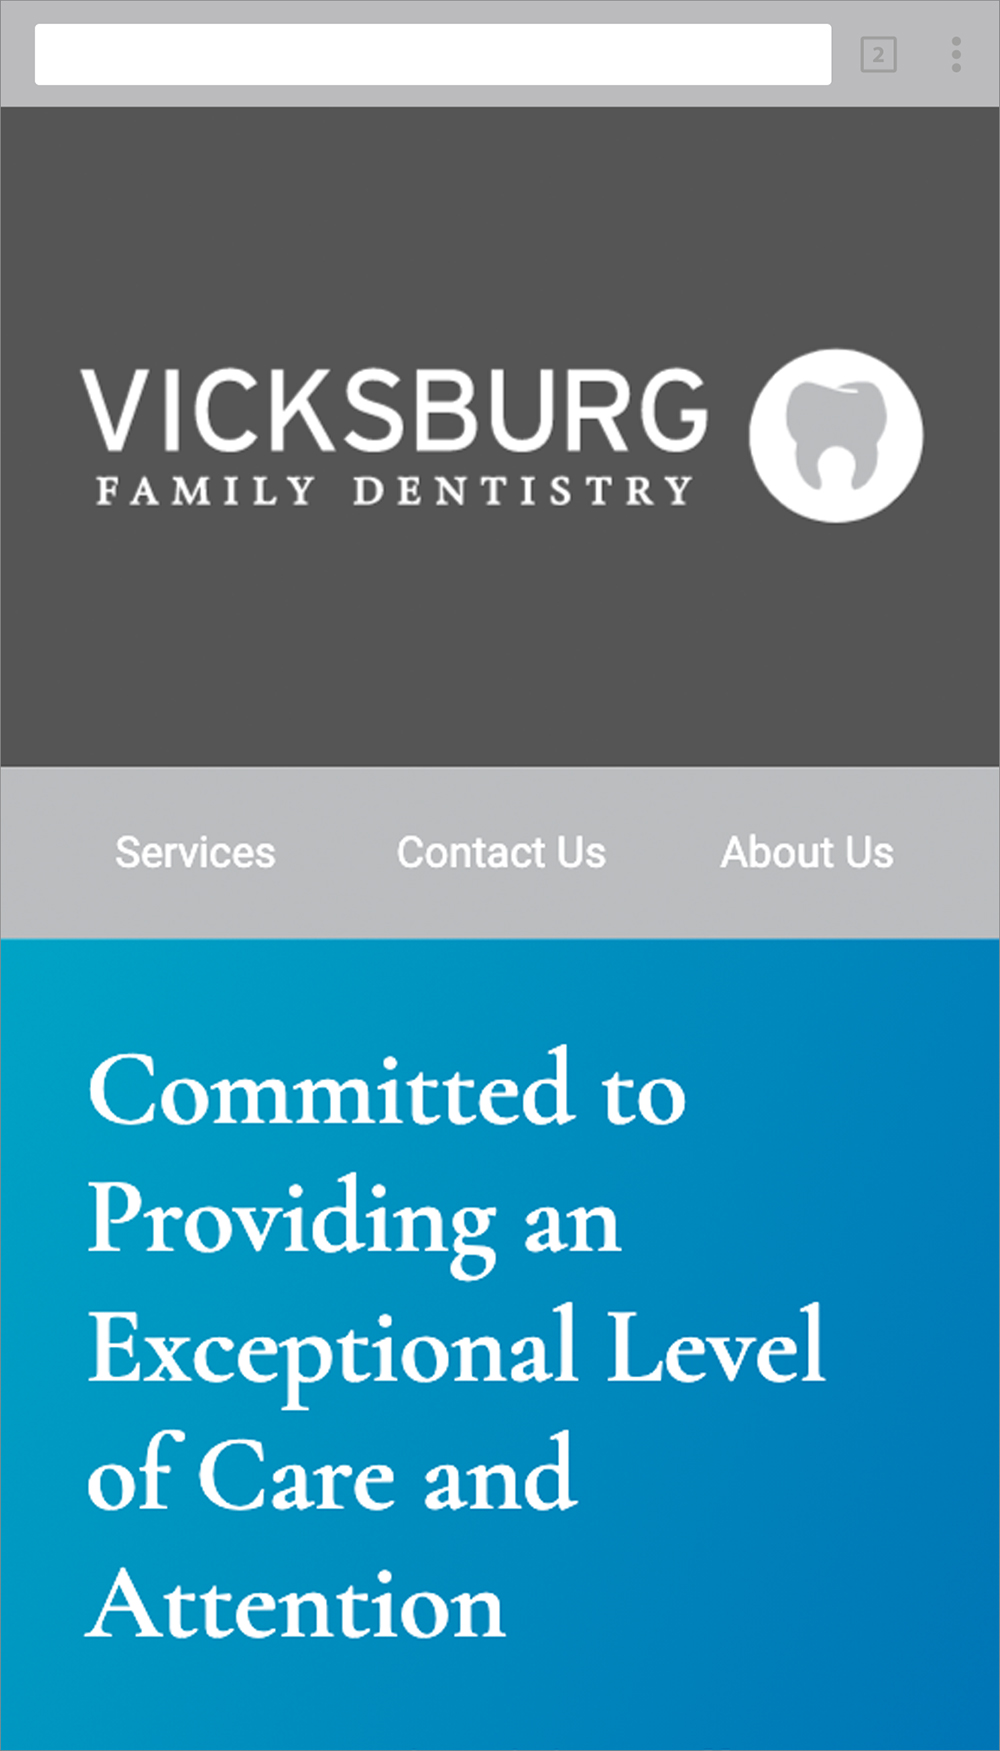 Vicksburg Family Dentistry Website Homepage on Mobile